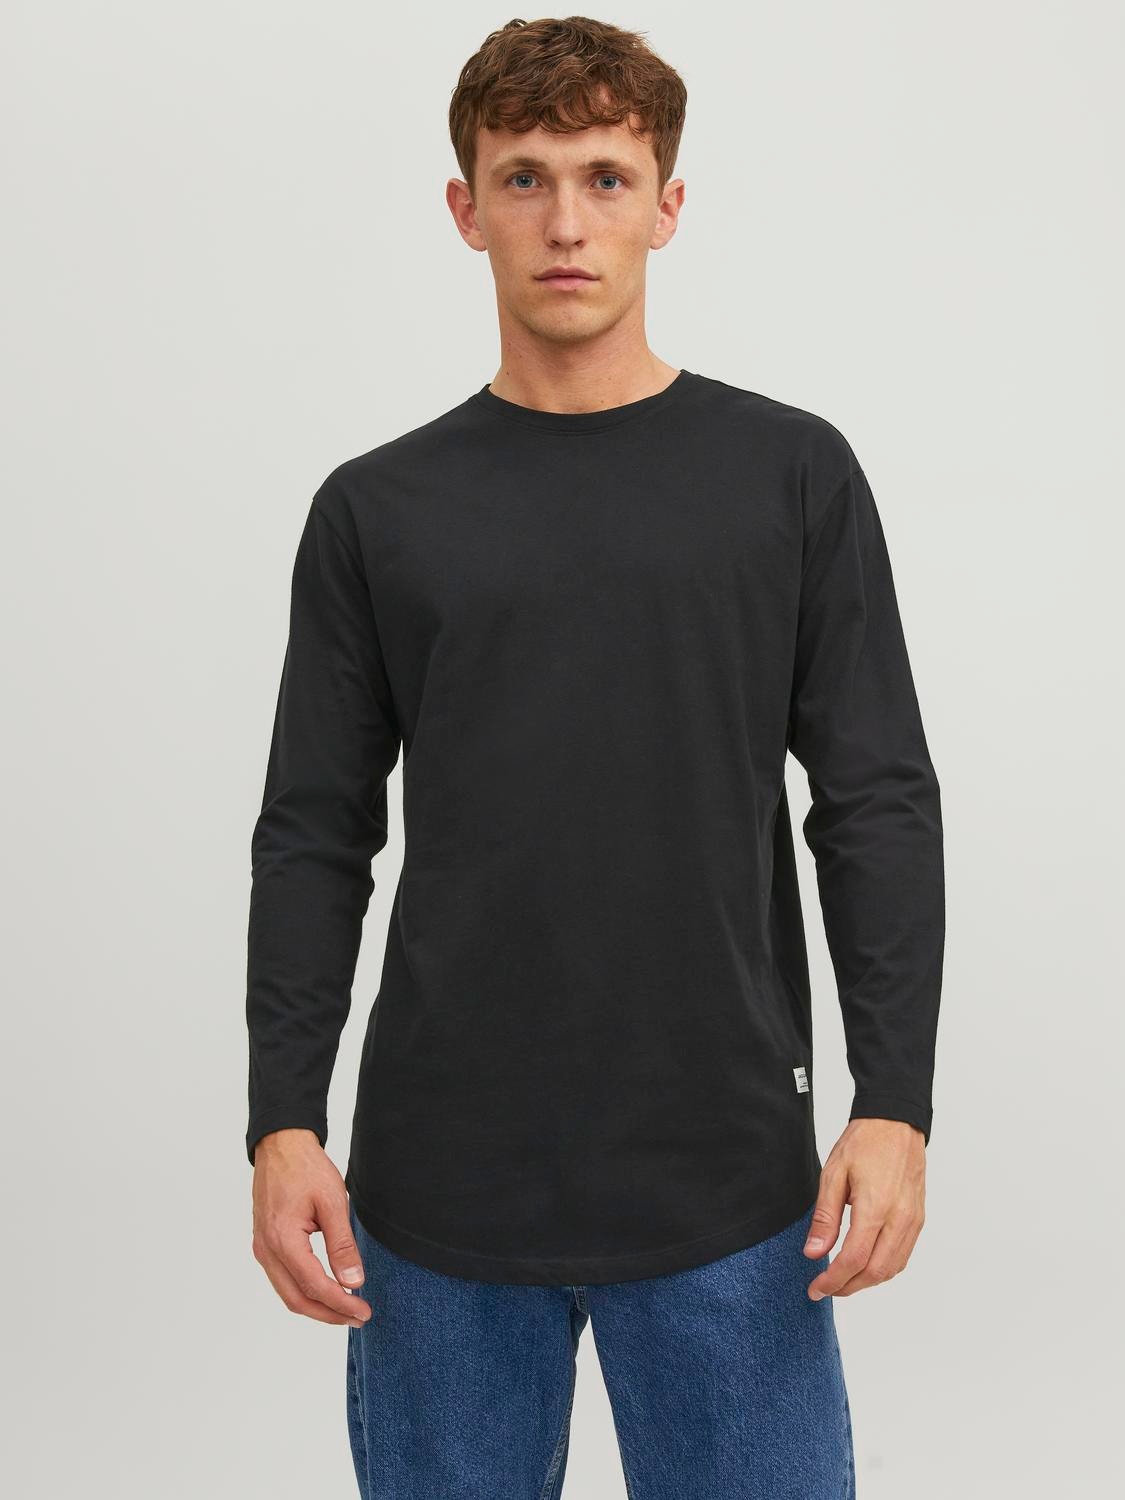 Jack & Jones Enfärgat Rundringning T-shirt -Black - 12190128